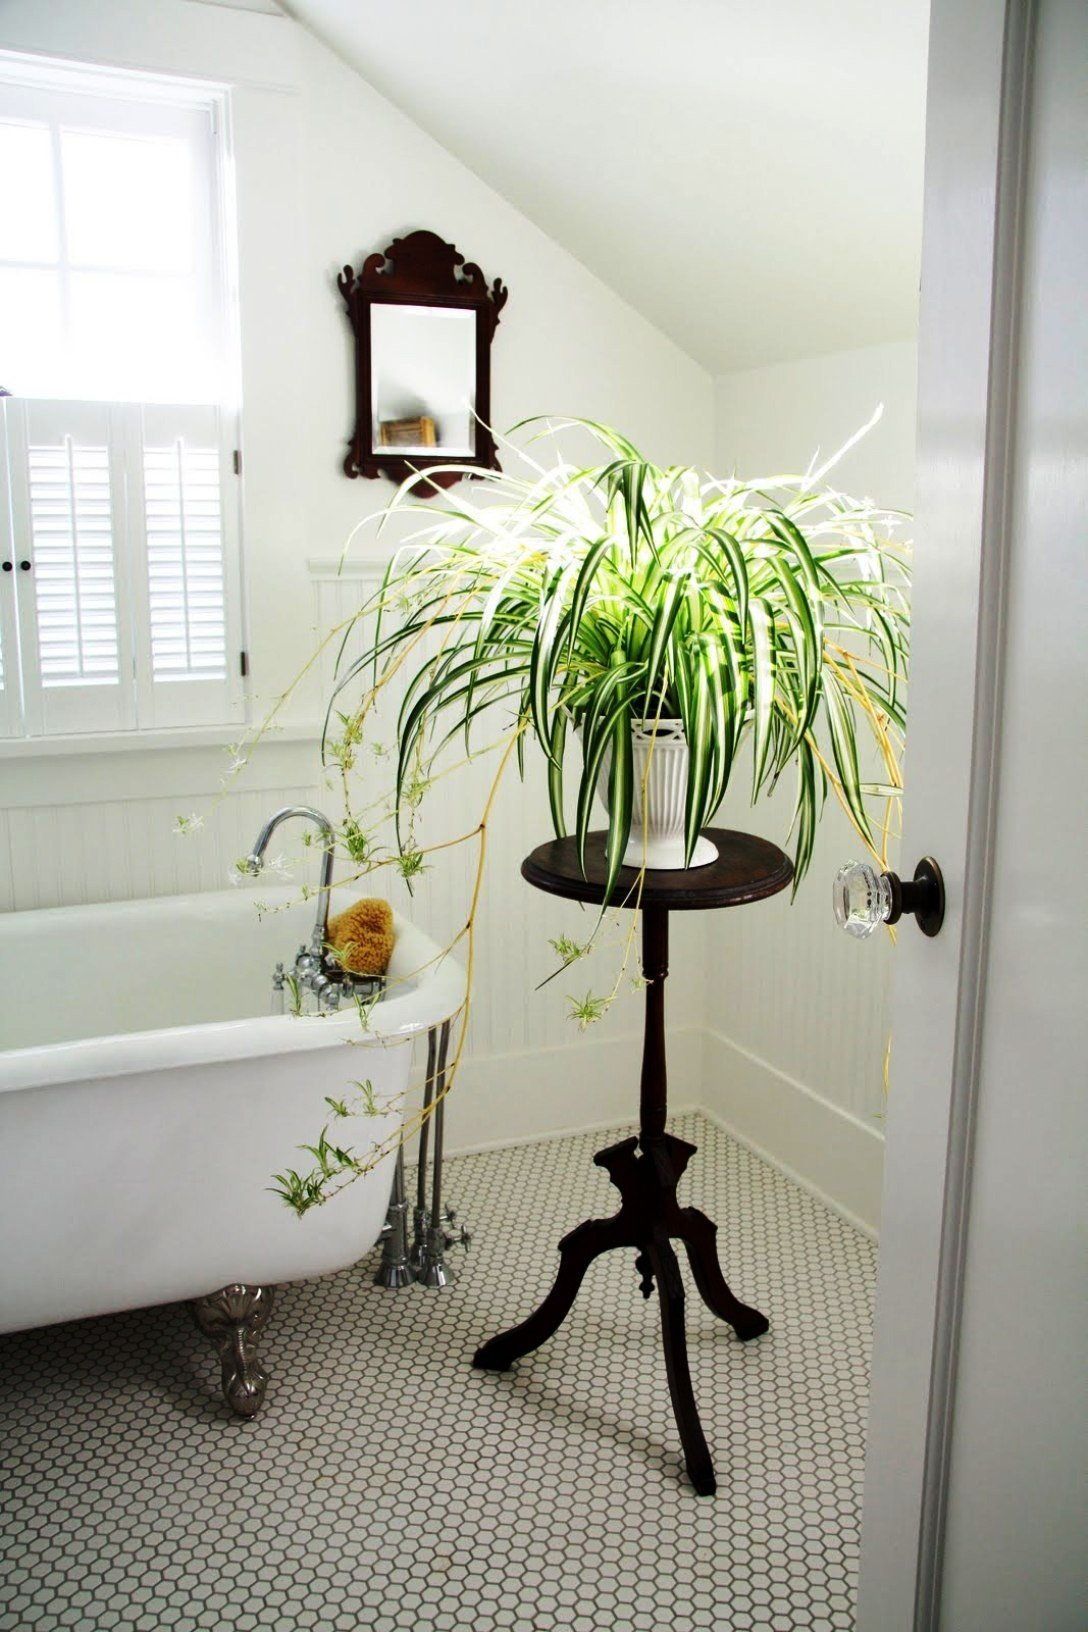 Cây cảnh trong phòng tắm cần đảm bảo các yếu tố ưa độ ẩm, sự thay đổi nhiệt độ vào ban đêm và không cần nhiều ánh nắng.